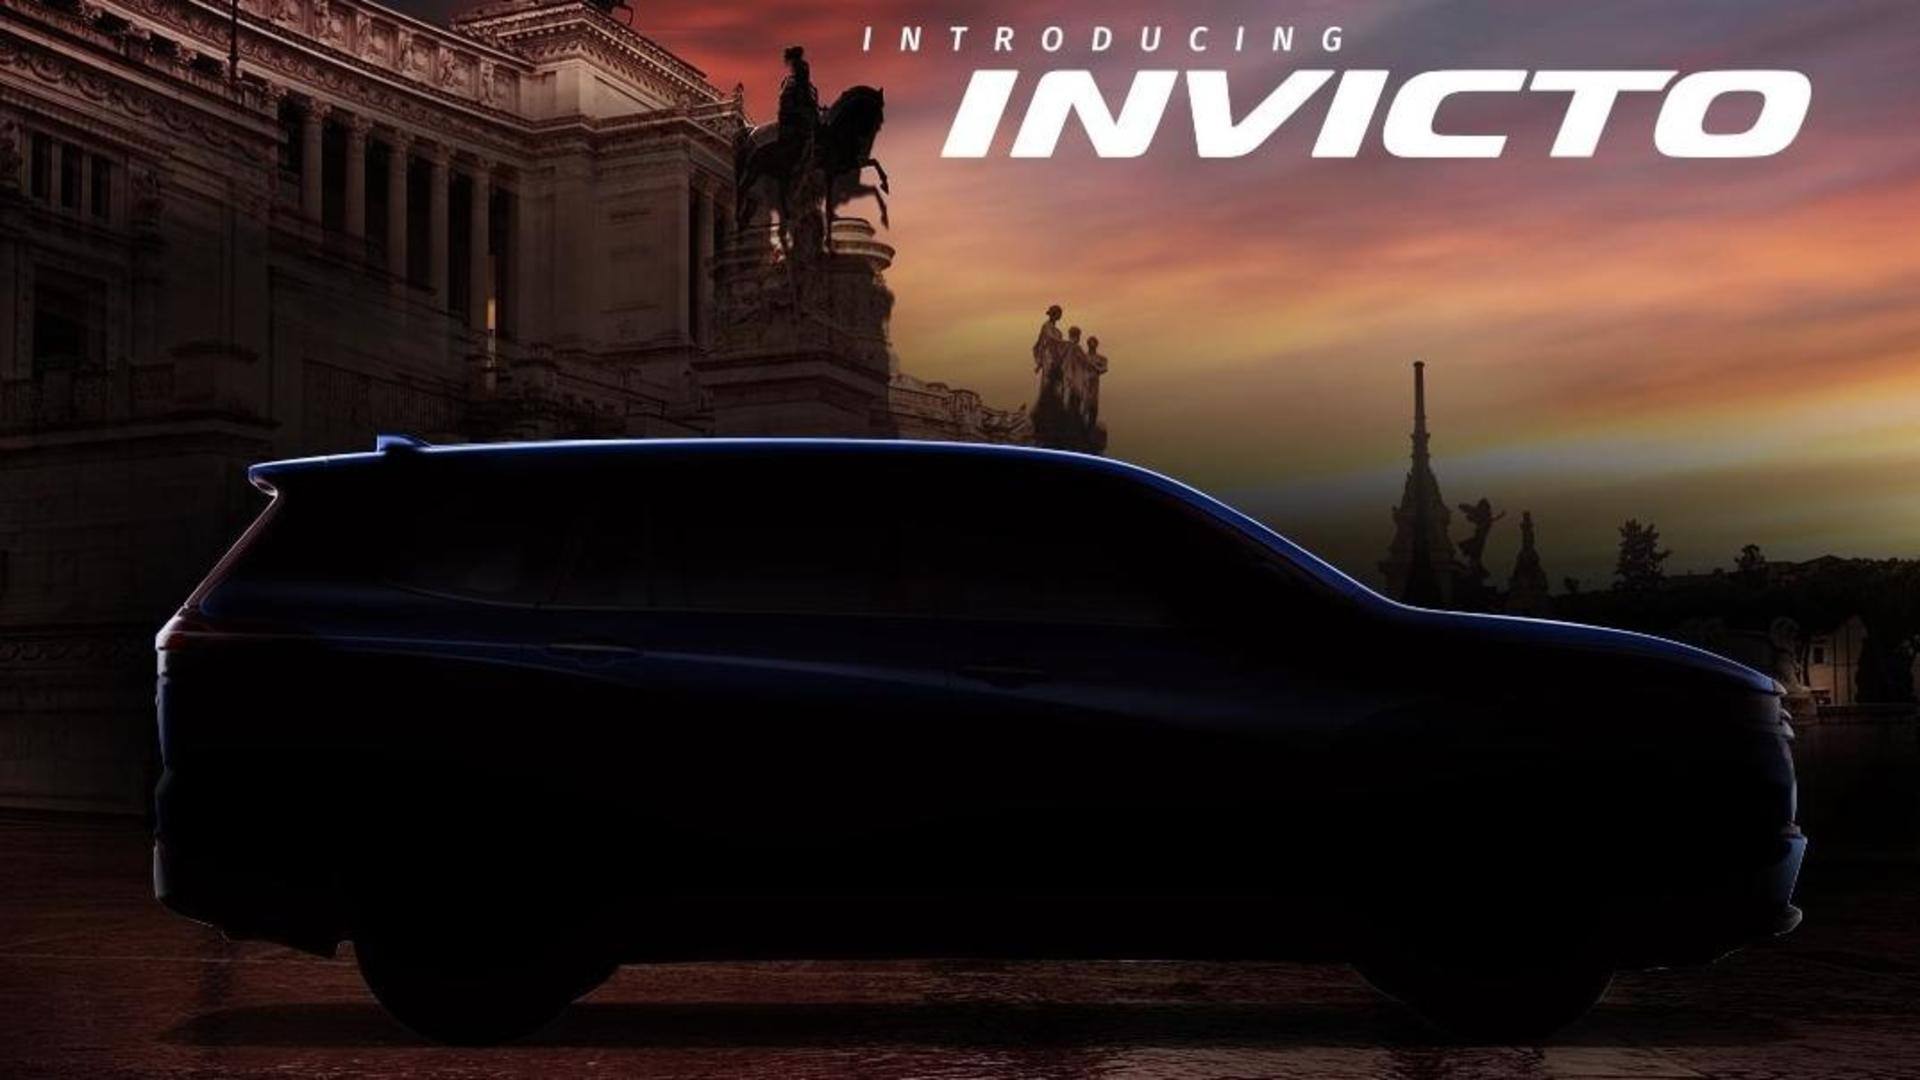 Maruti Suzuki opens bookings for flagship Invicto MPV in India